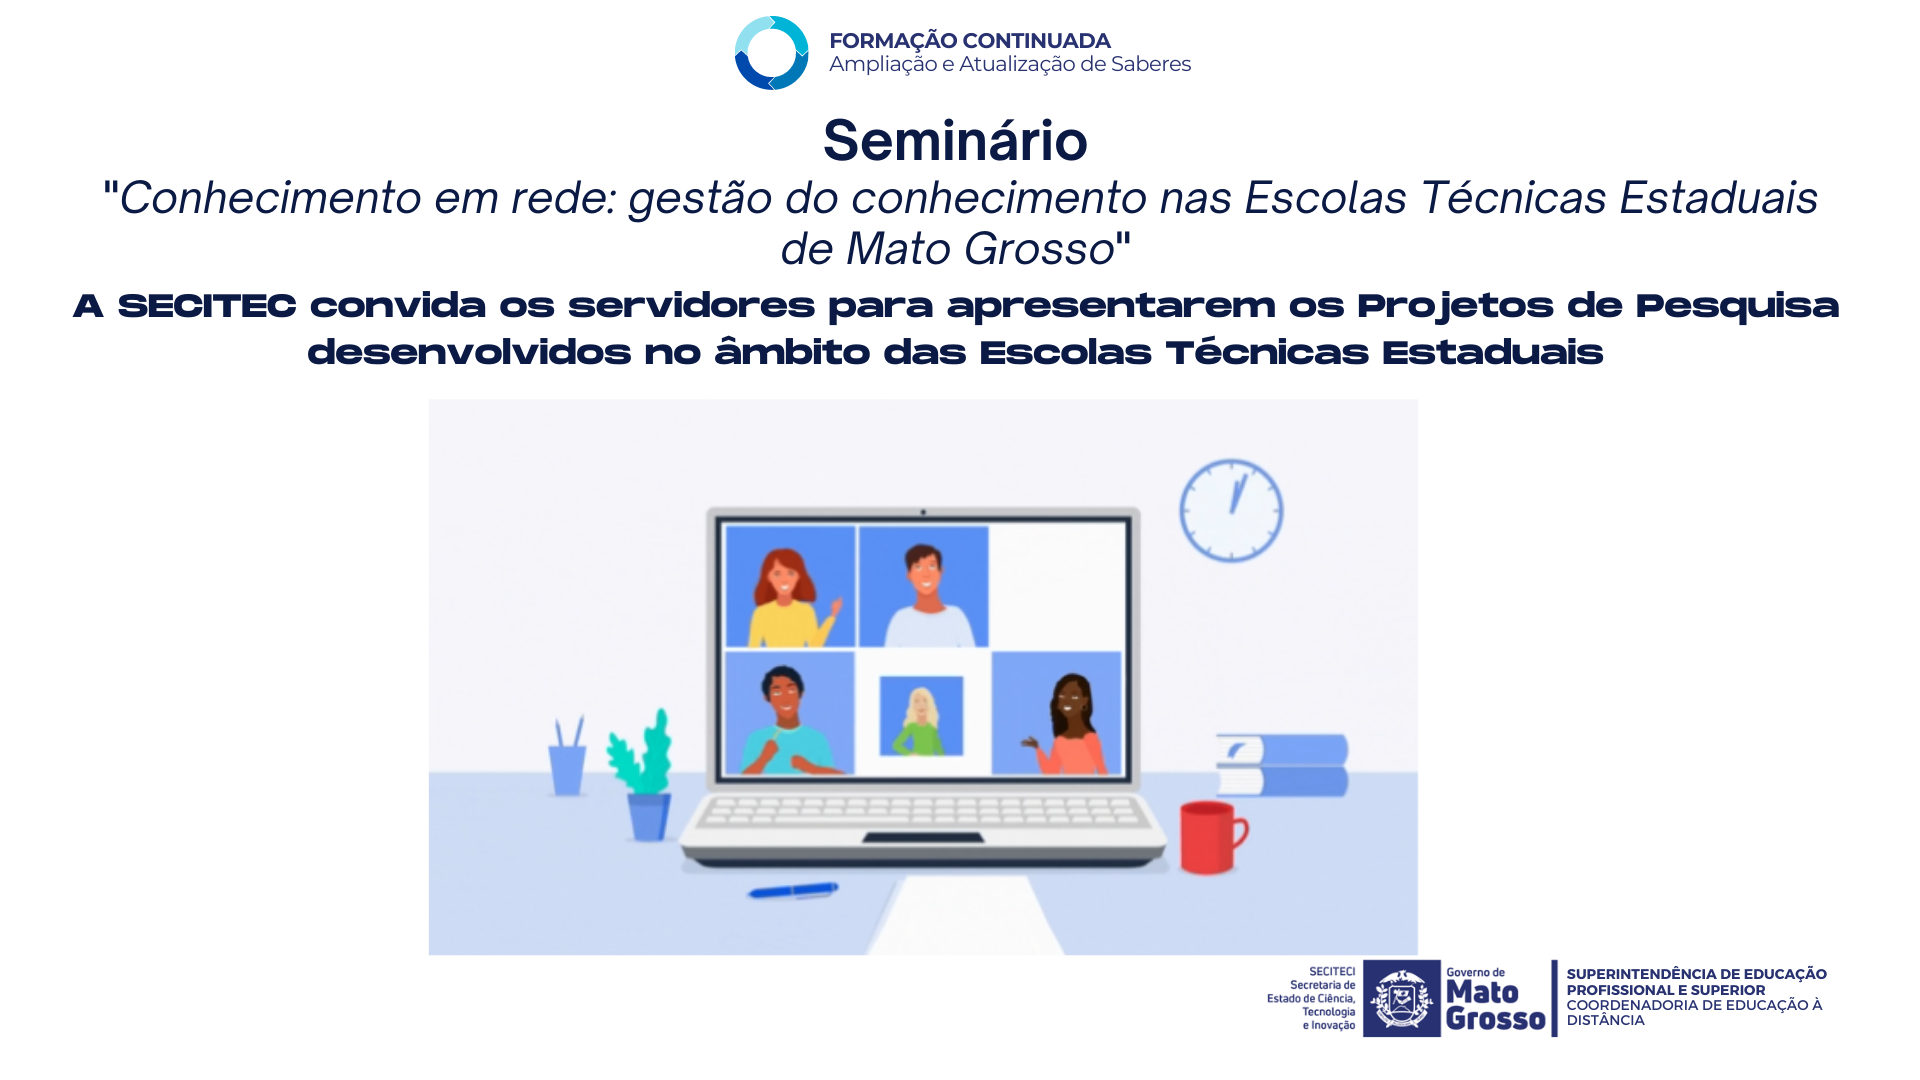 Seminário "Conhecimento em rede: gestão do conhecimento nas Escolas Técnicas Estaduais de Mato Grosso"